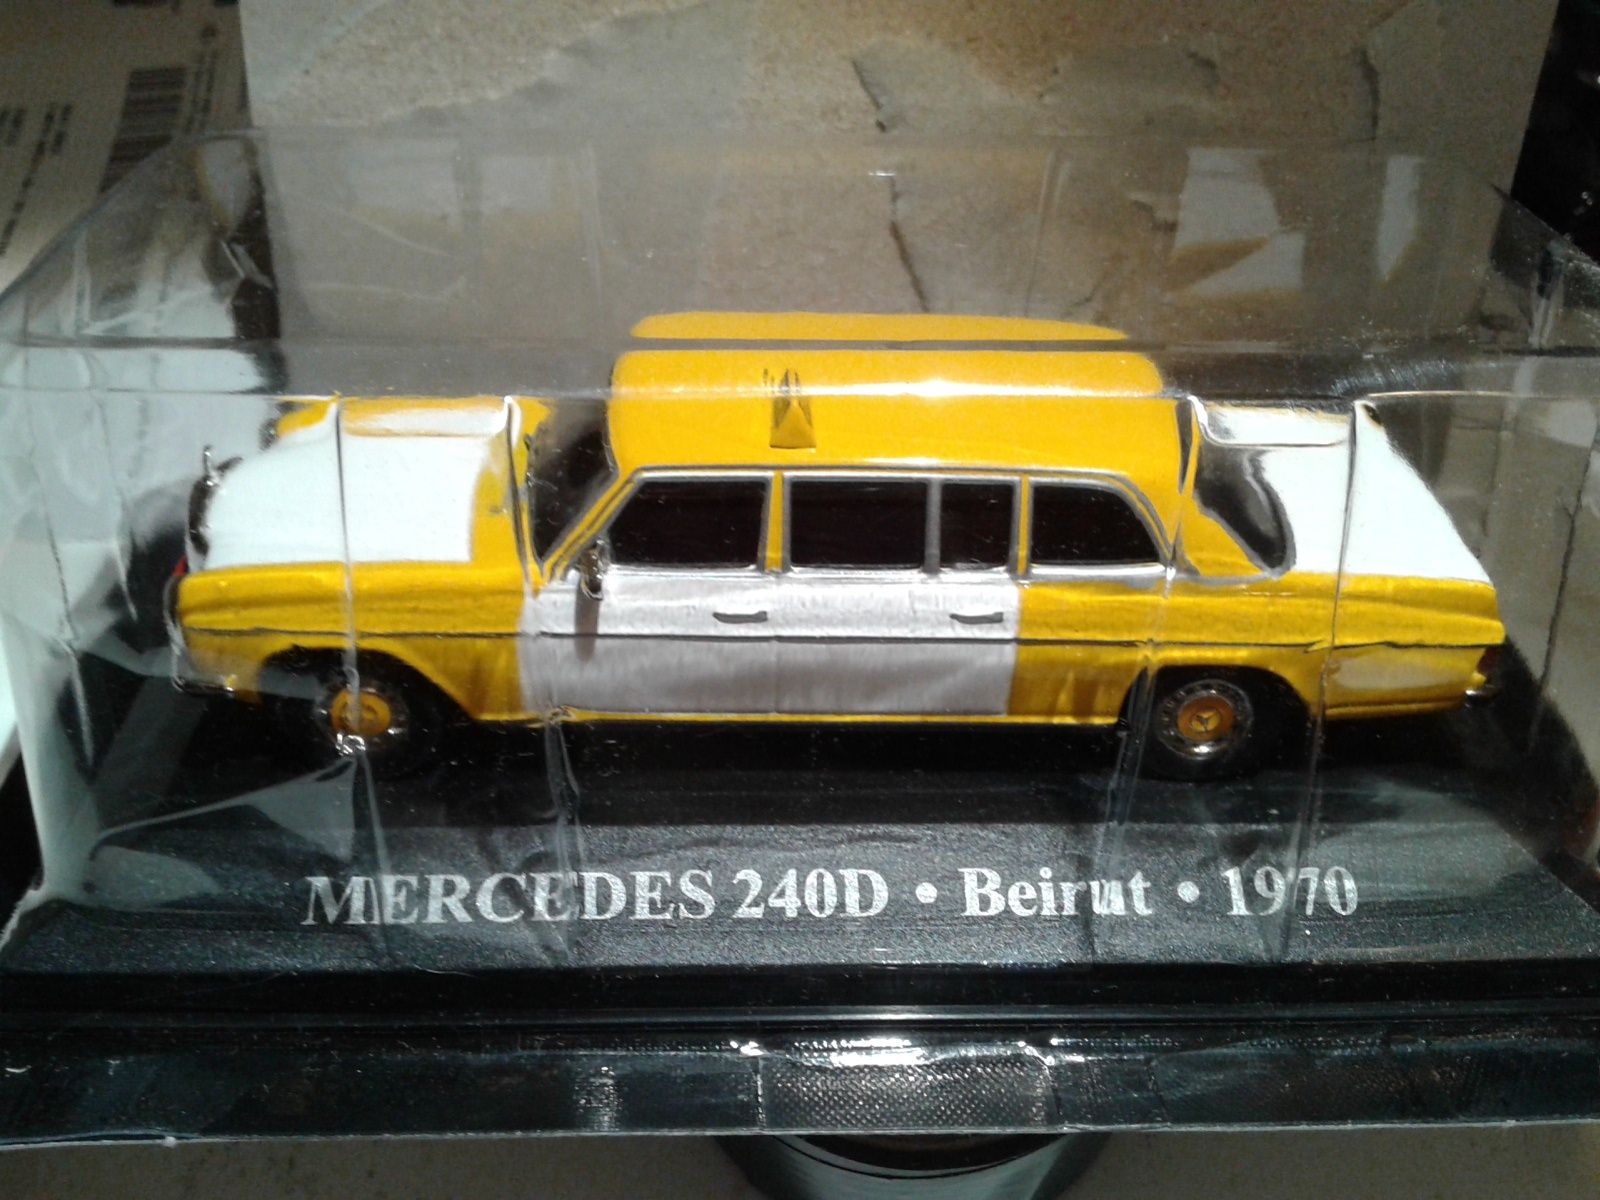 Miniaturas "Taxis do mundo" escala 1/43